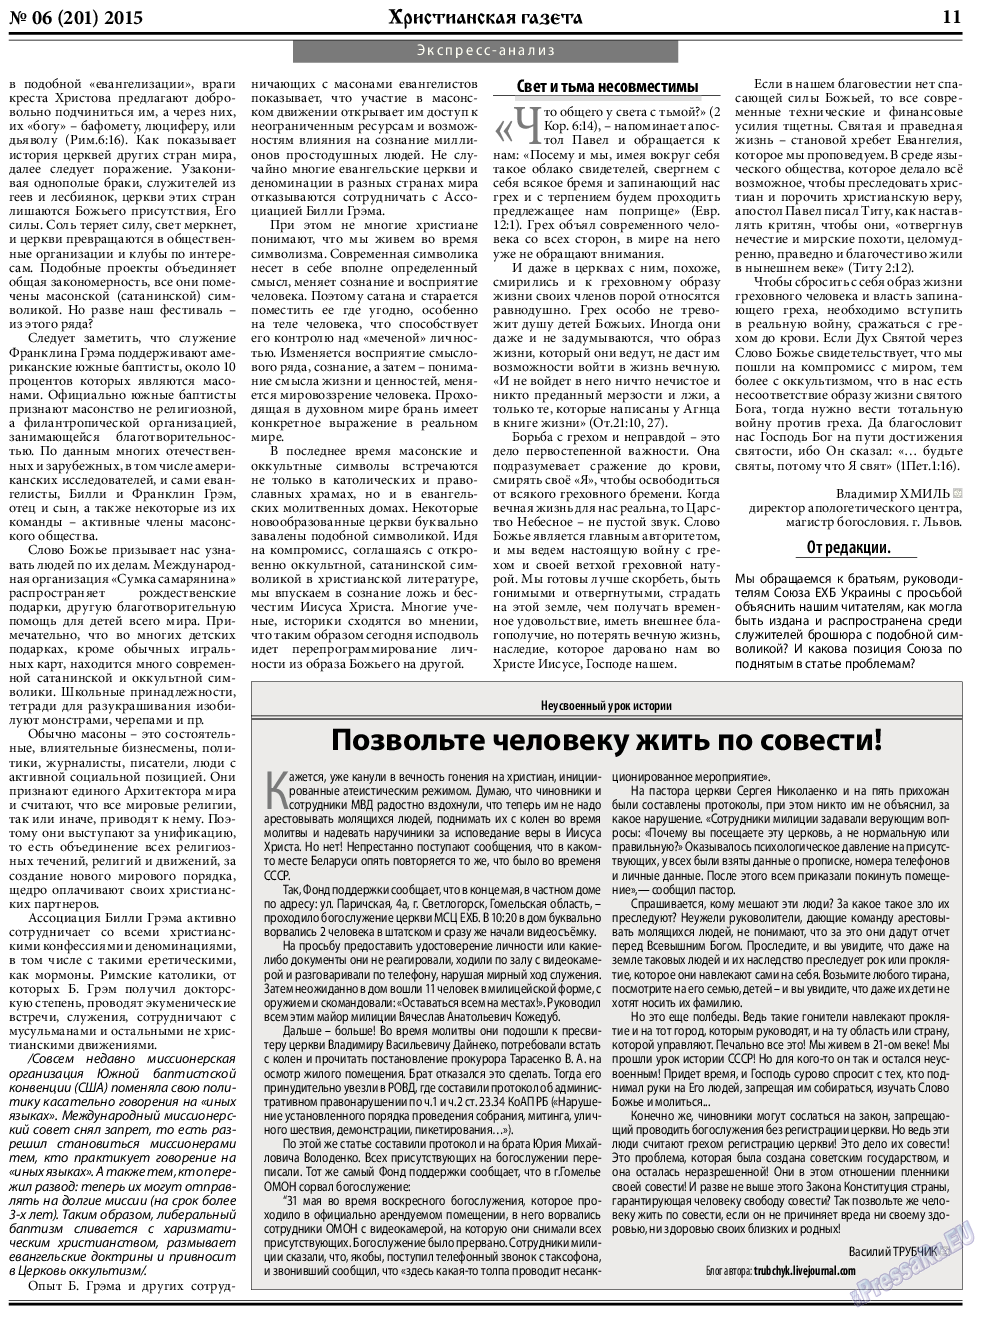 Христианская газета, газета. 2015 №6 стр.11